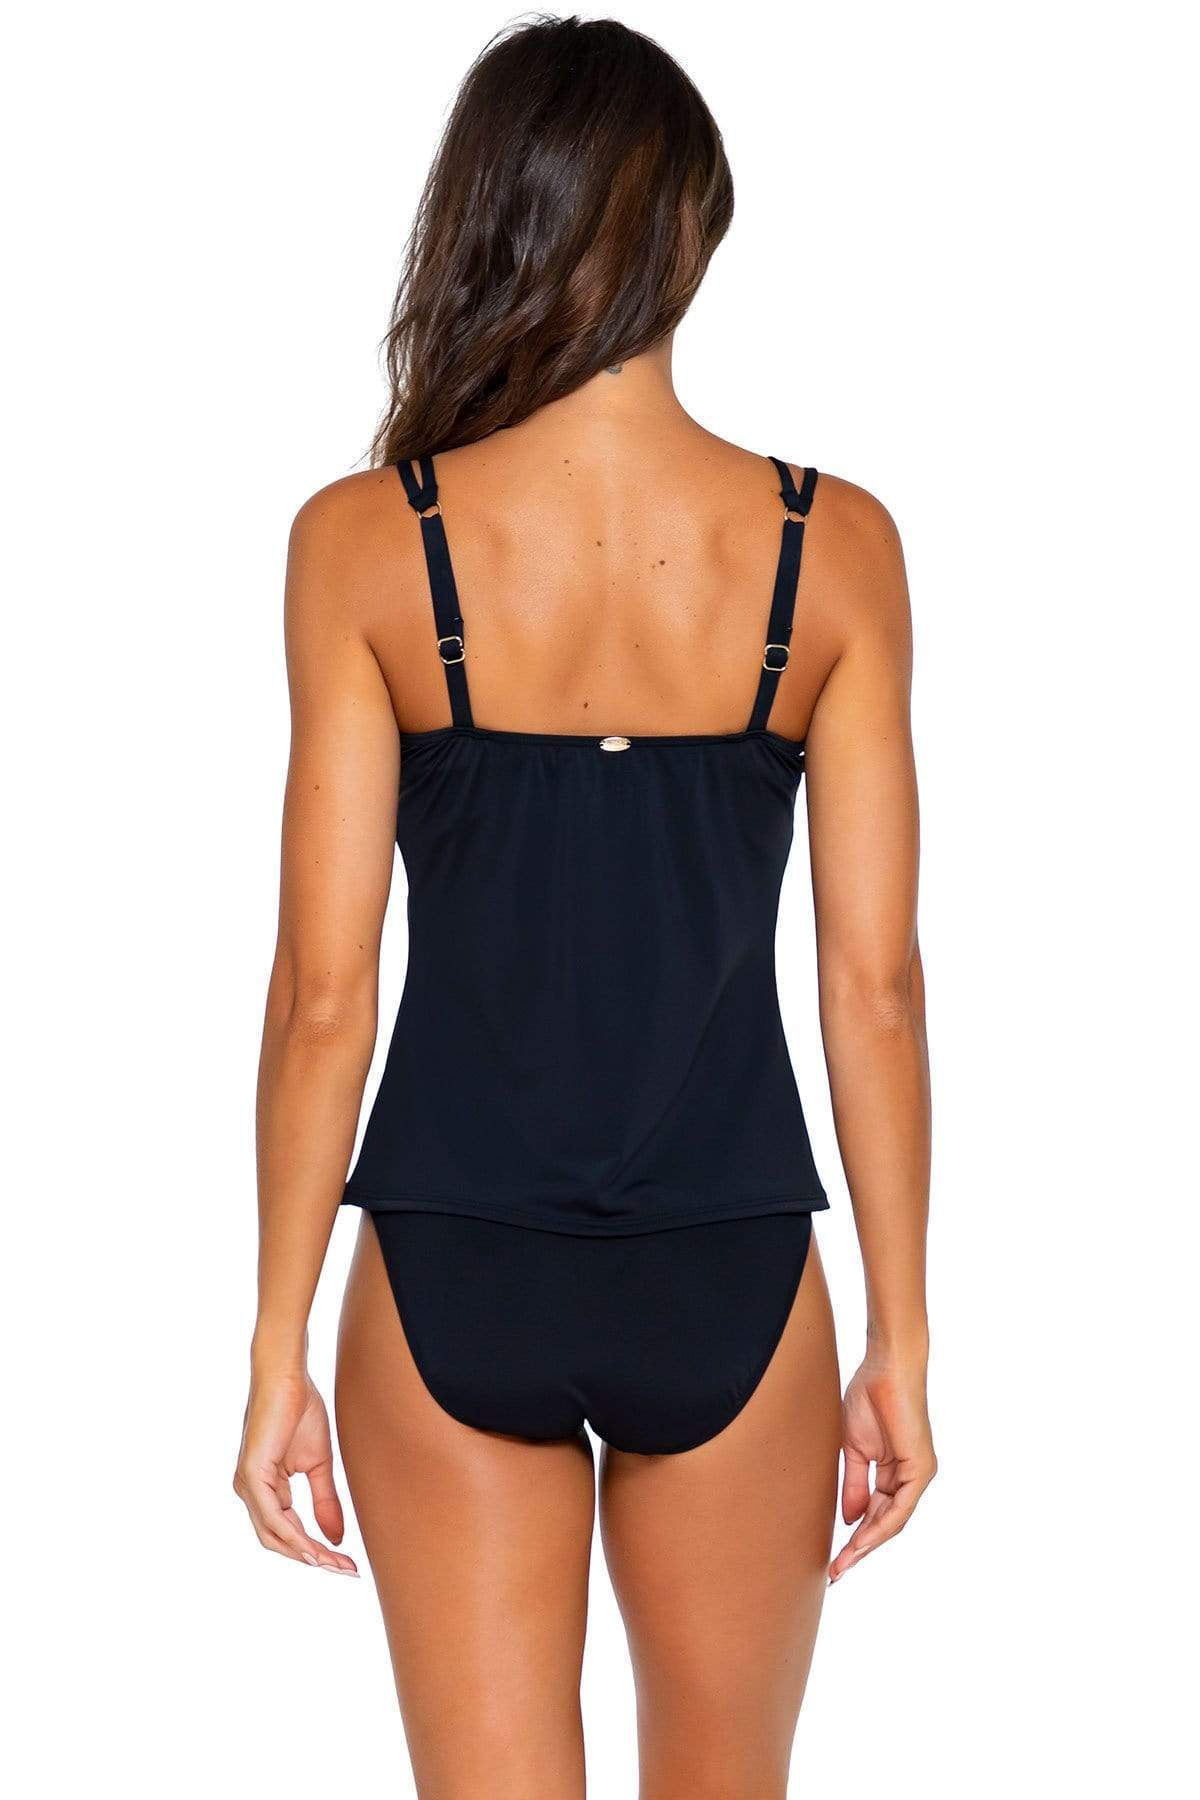 Bestswimwear -  Sunsets Black Taylor Tankini